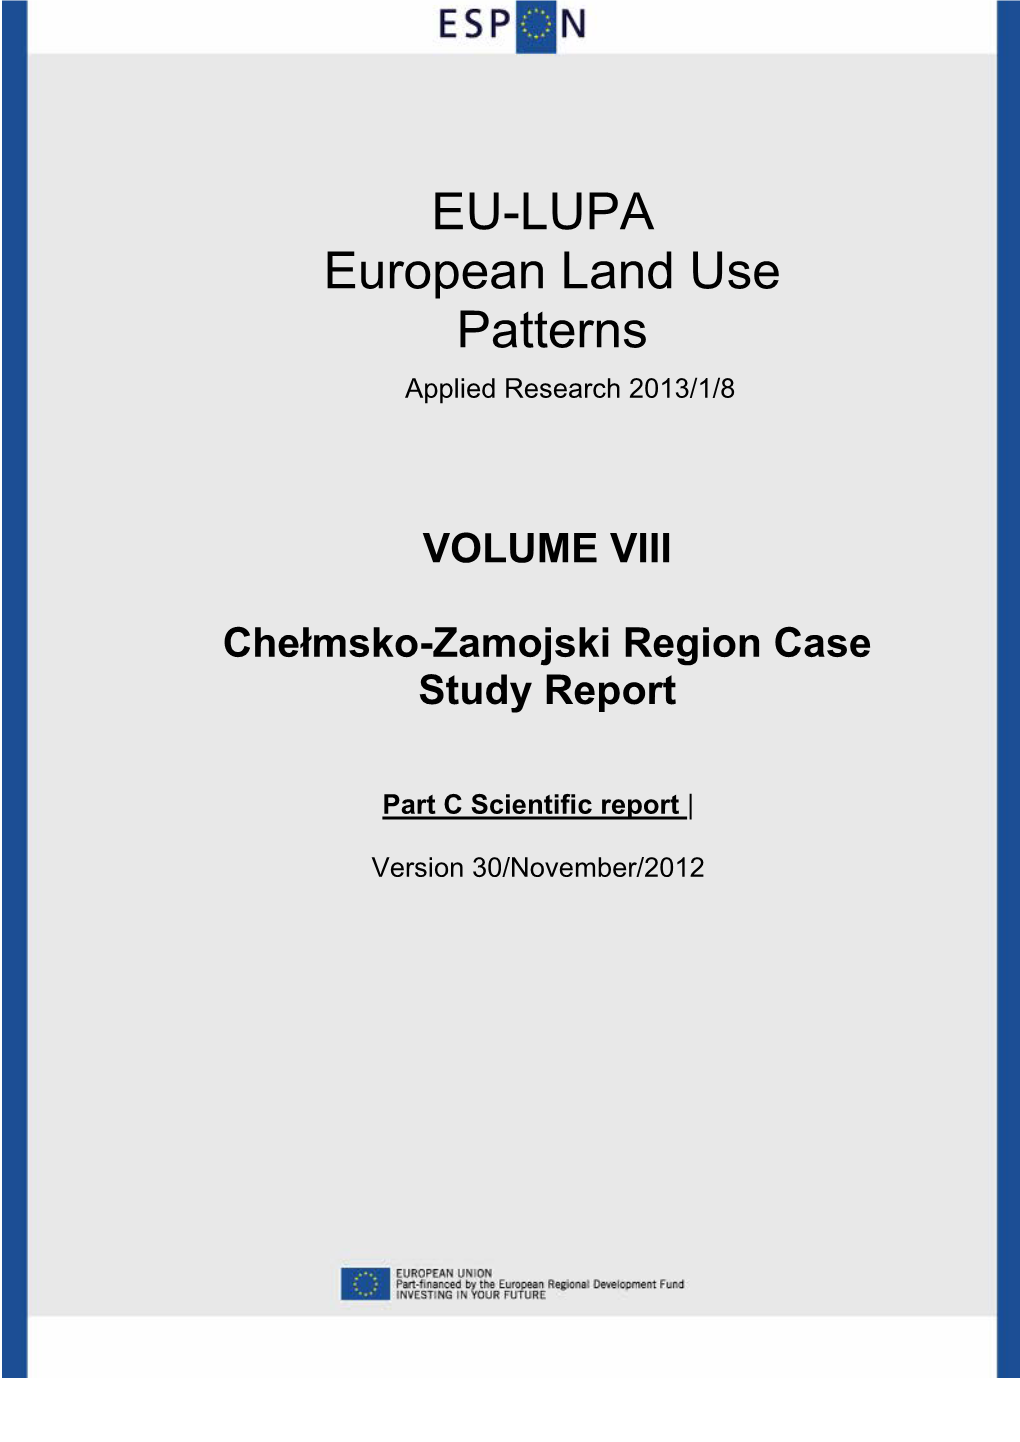 Scientific Report, Case Study Chełmsko-Zamojski Region